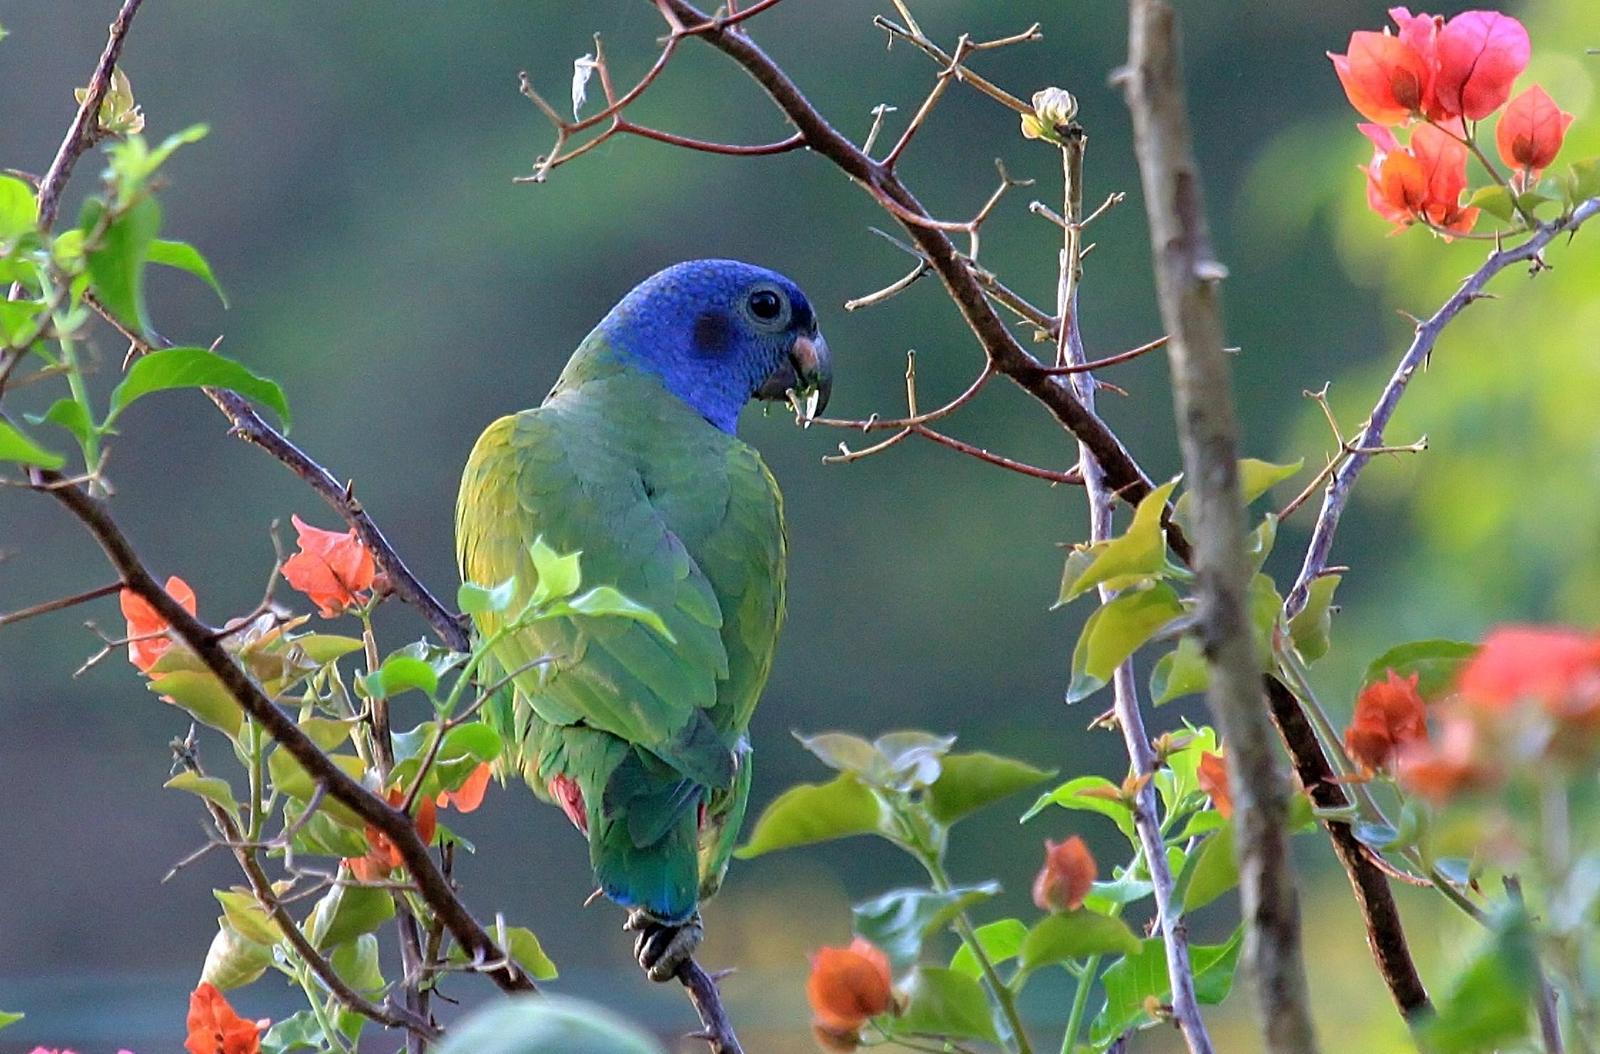 Blue-headed Parrot Photo by Matthew McCluskey